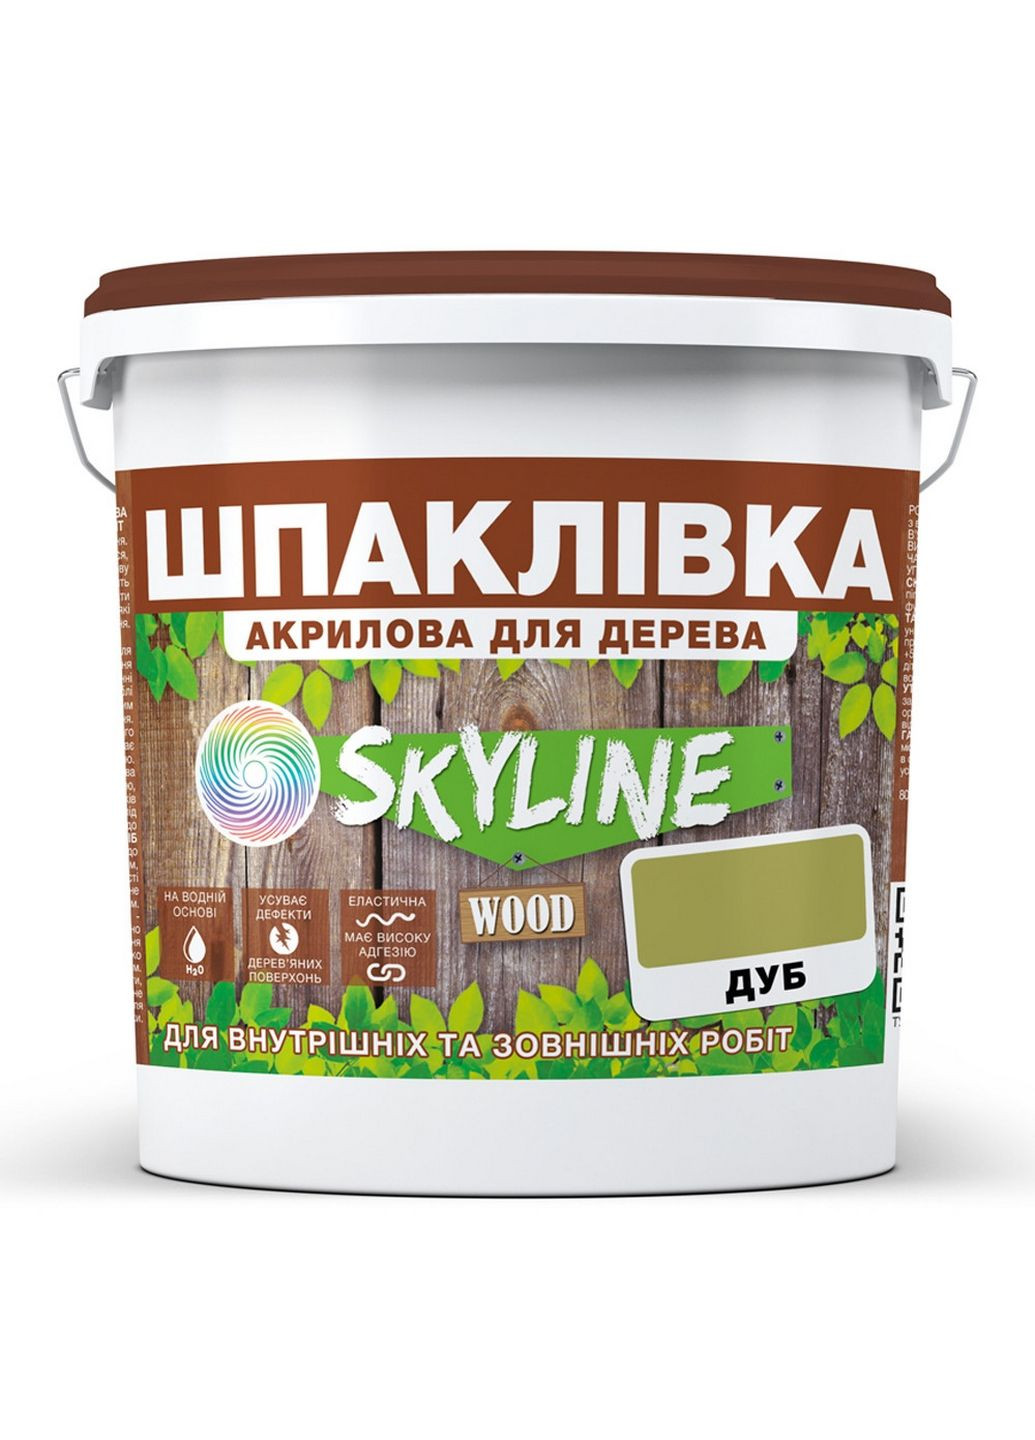 Шпаклівка для Дерева готова до застосування акрилу Wood Дуб 14 кг SkyLine (283327766)